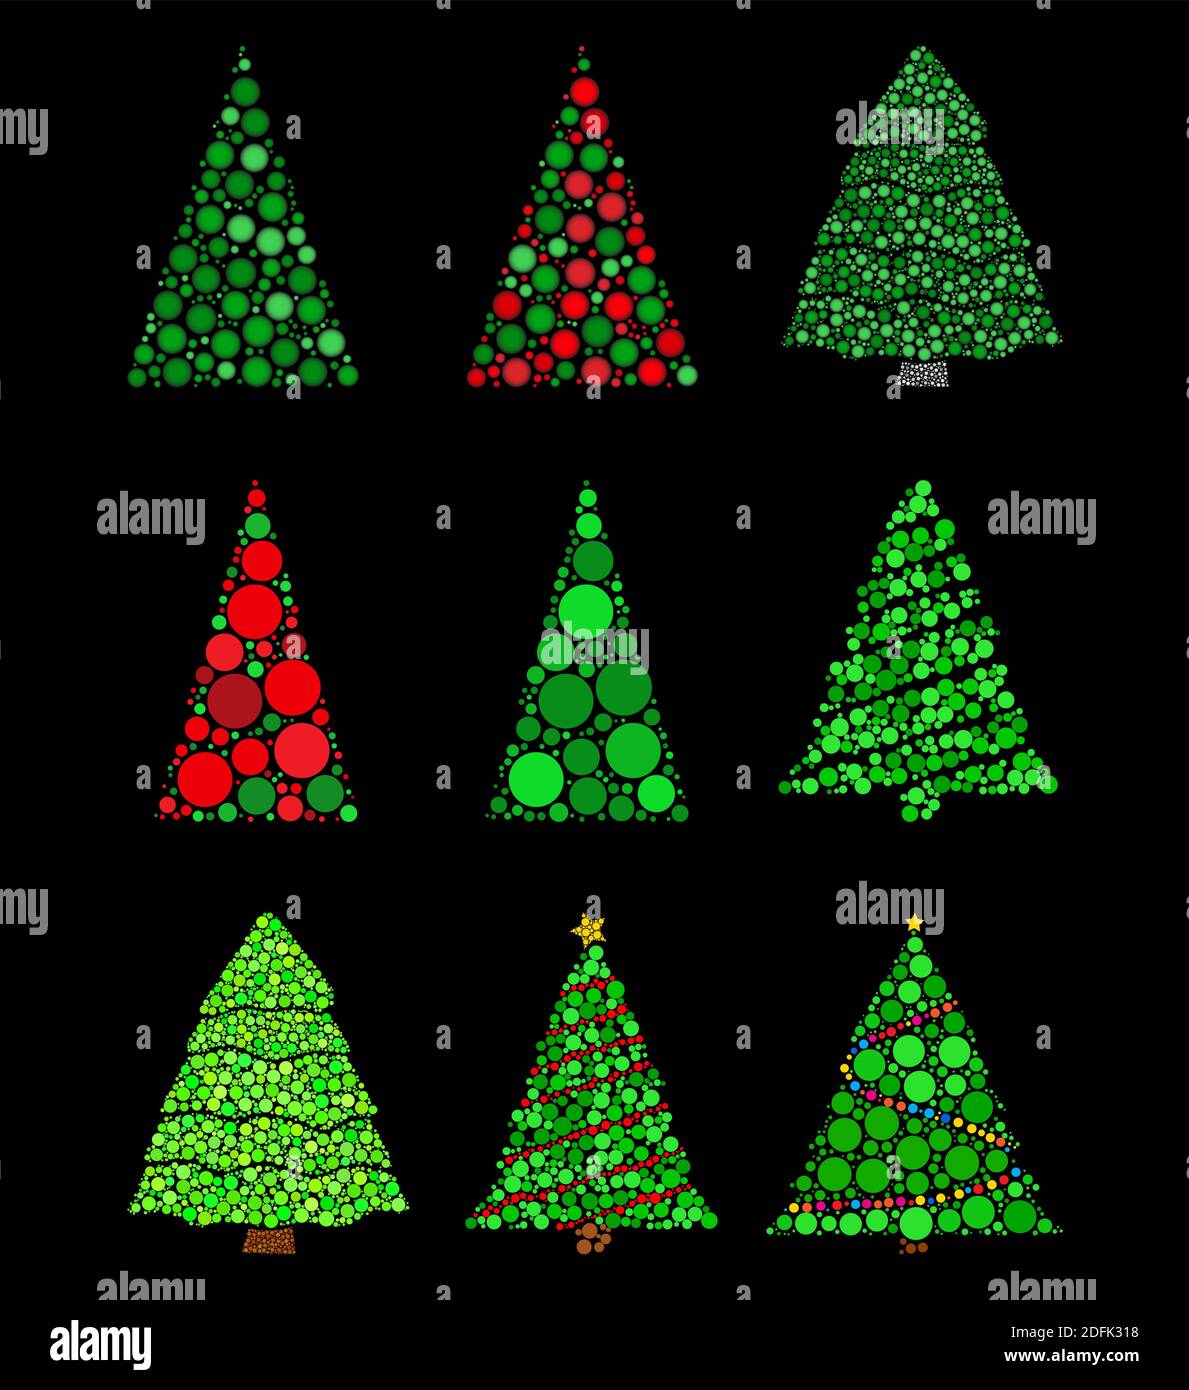 Abstrakter weihnachtsbaum aus Punkten gesetzt. Tannenbaum mit grünen Kreisen Sammlung gemacht. Vektordarstellung auf schwarzem Hintergrund isoliert. Am besten für Re Stock Vektor